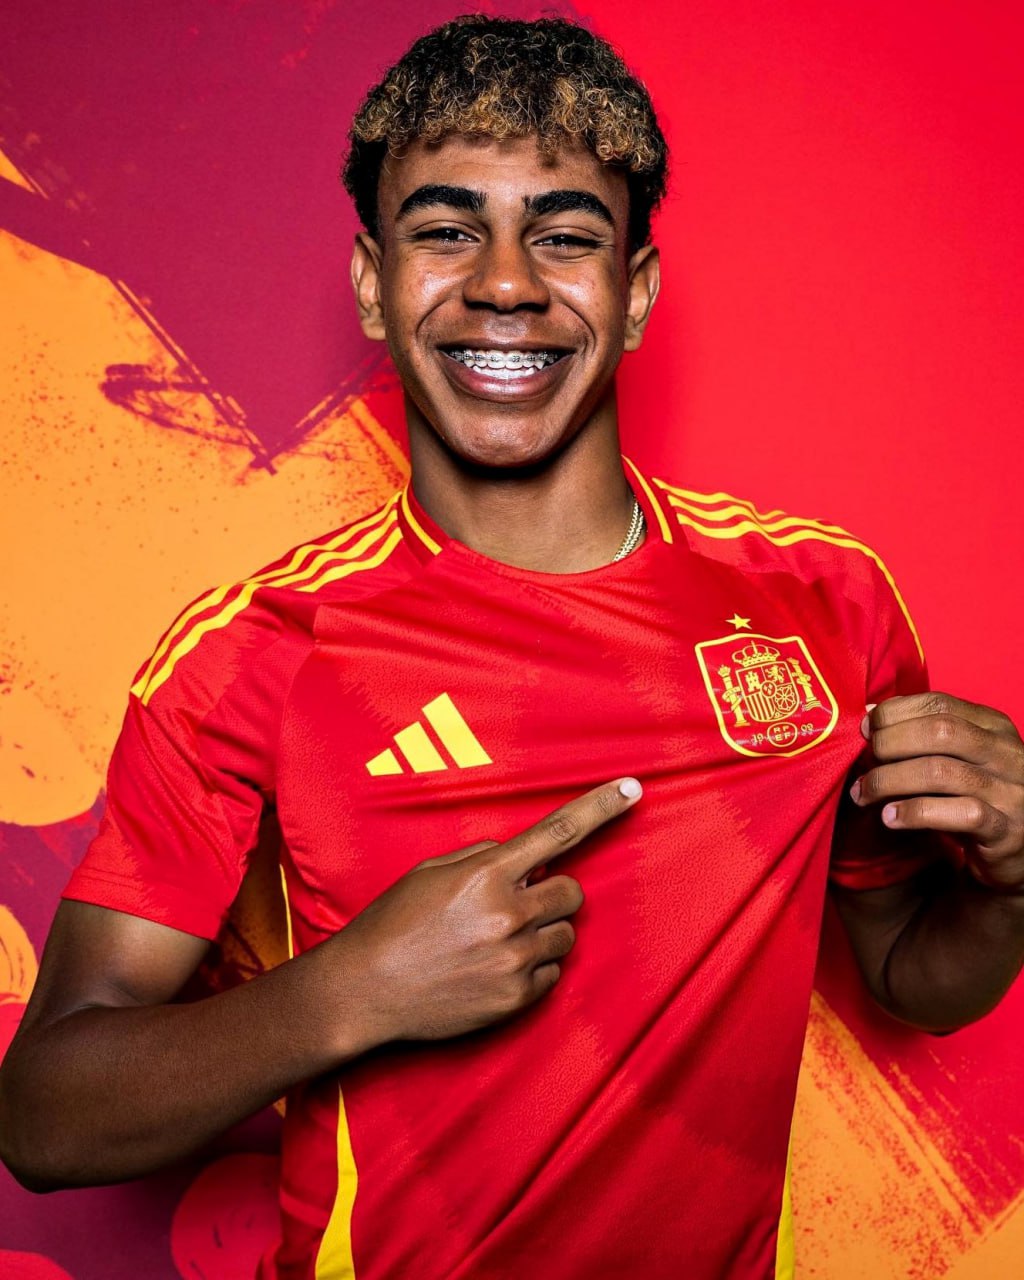 Ламин Ямаль станет самым молодым игроком в истории Евро! Испанец выйдет в старте на матч против хорватов в возрасте 16 лет и 338 дней.  #футбол #чемпионатевропы